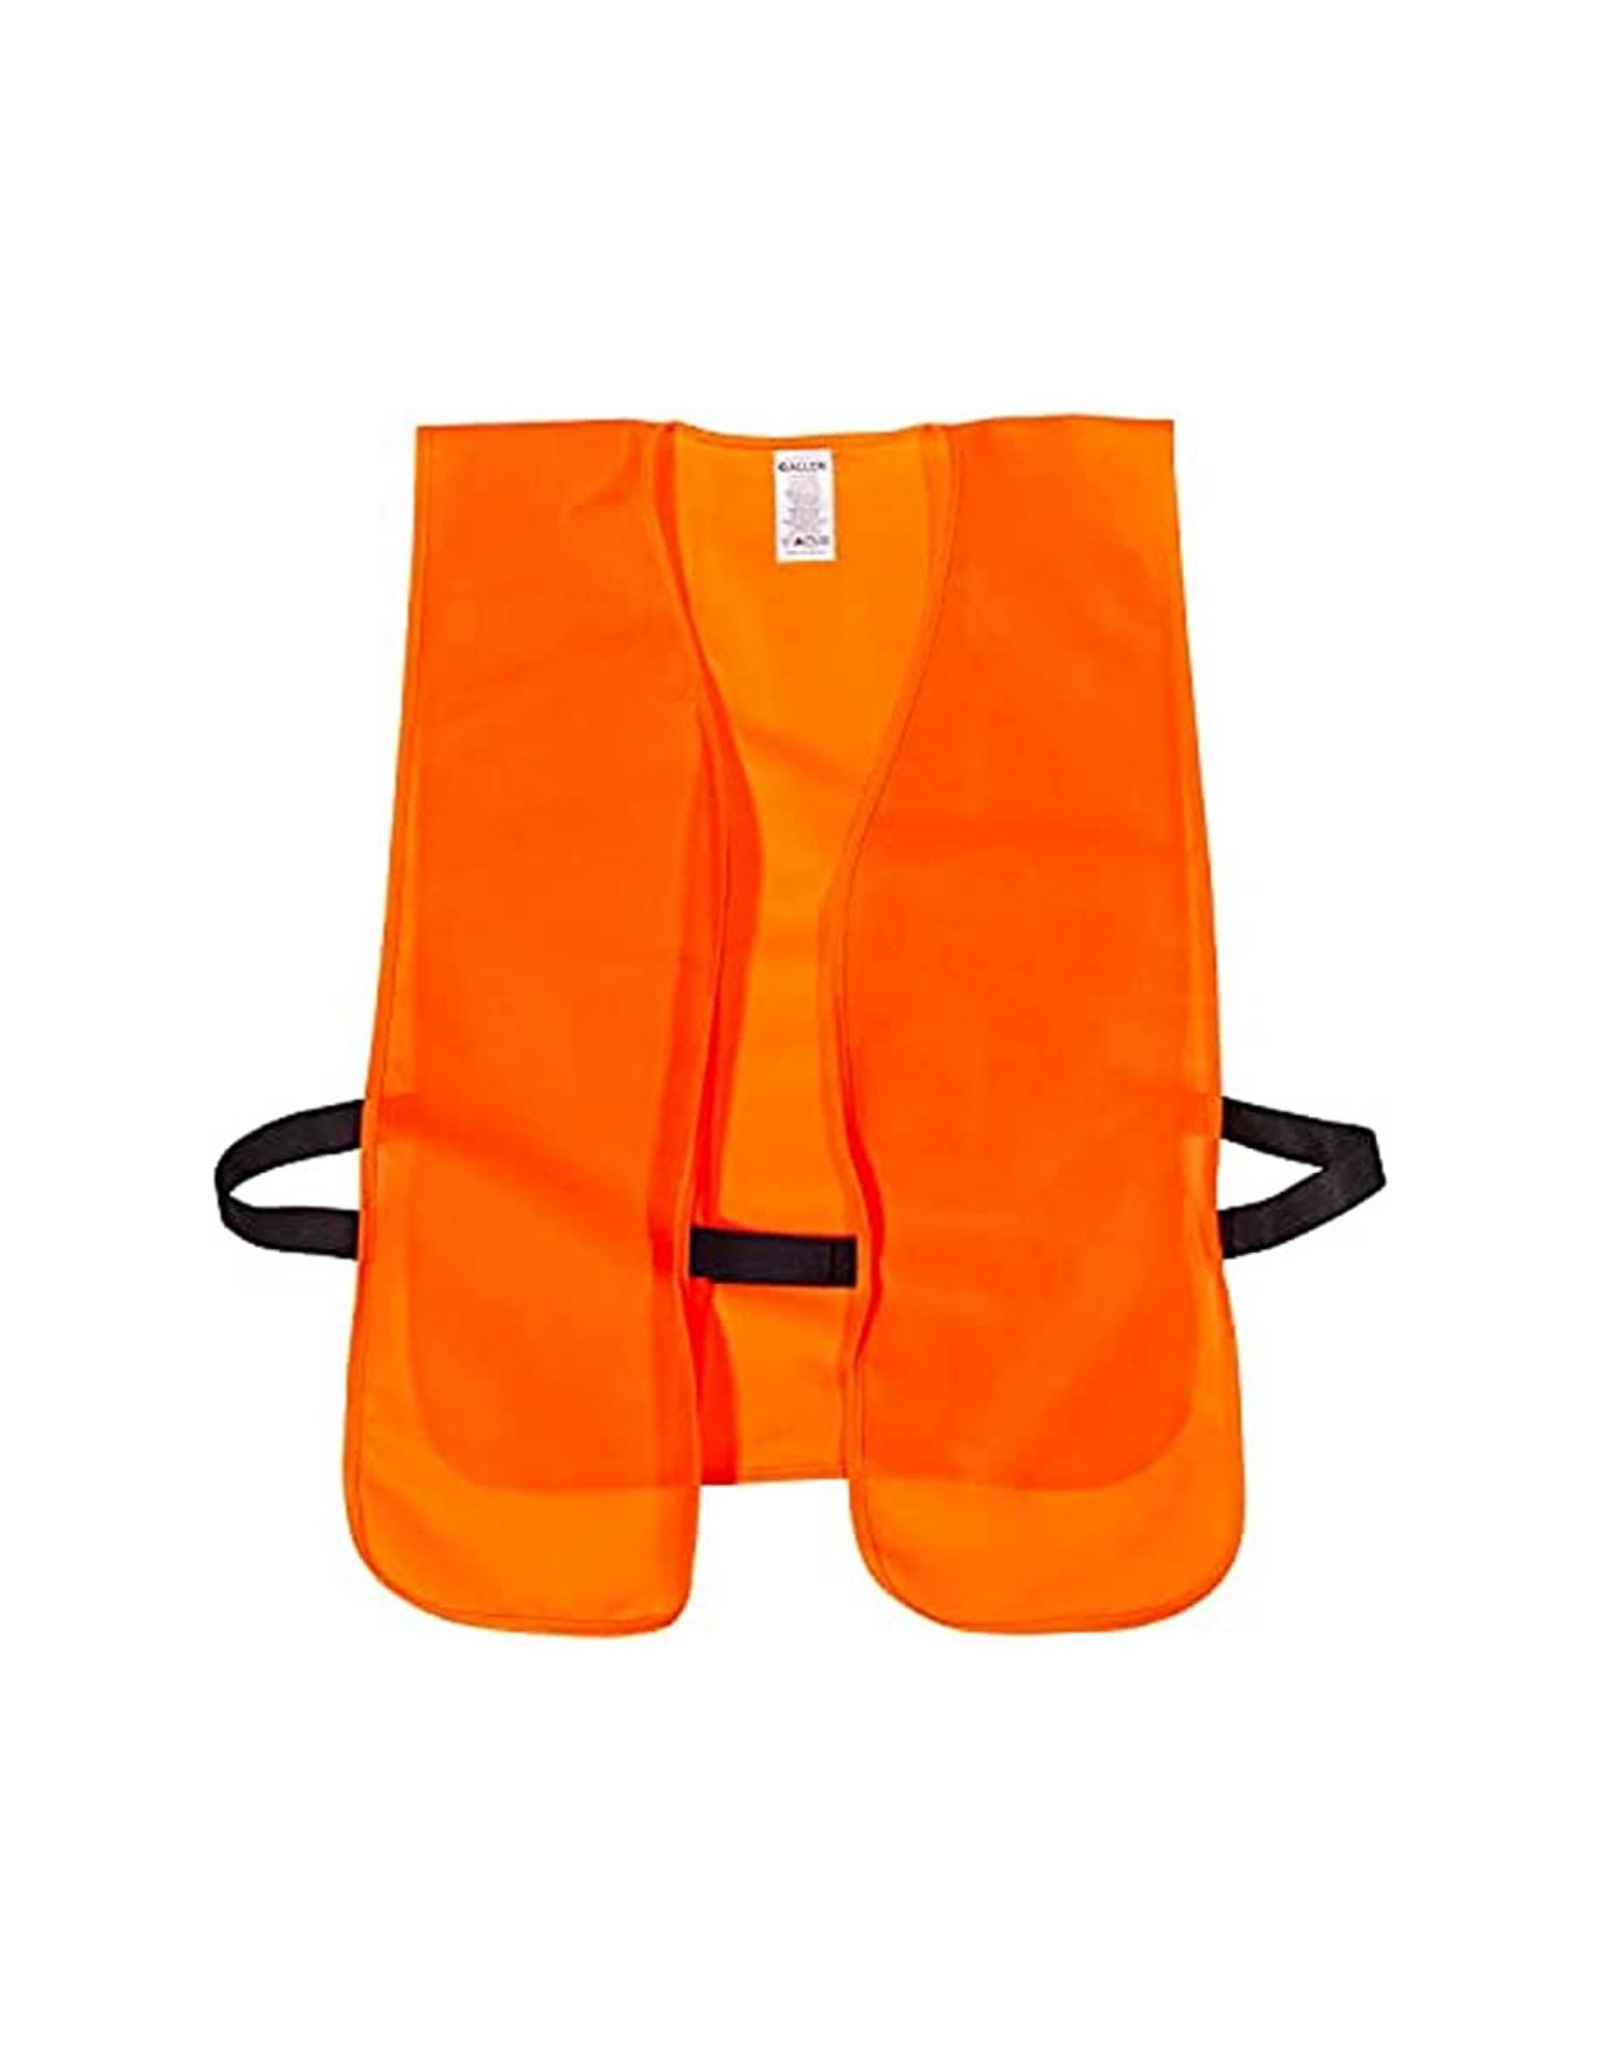 Allen Company Adult Unisex Safety & Hunting Vest, Large, Orange